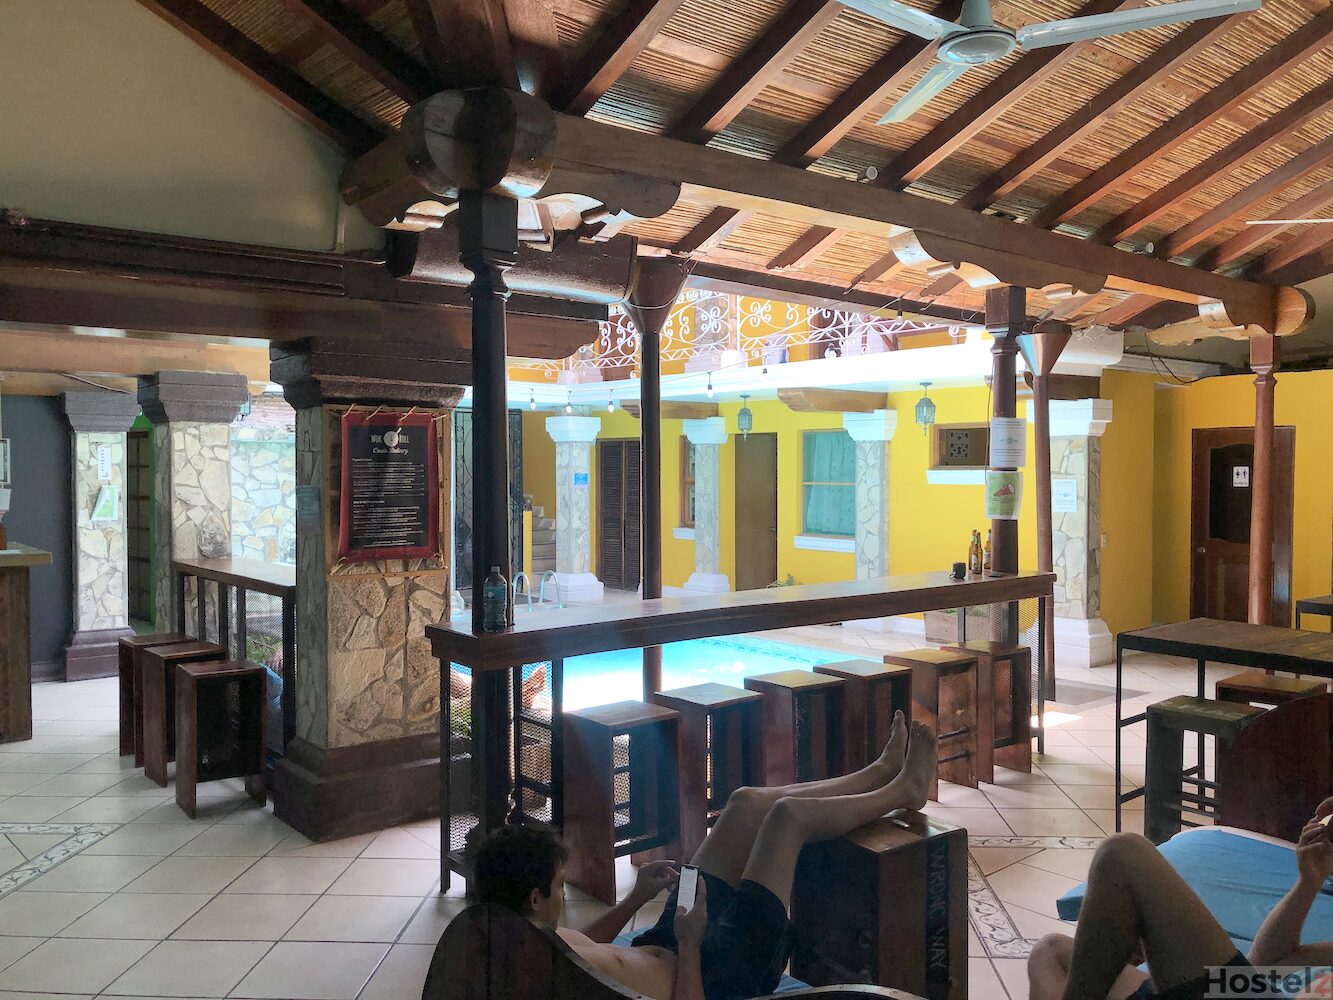 Hostel Oasis Granada - Granada, Nicaragua Reviews ...